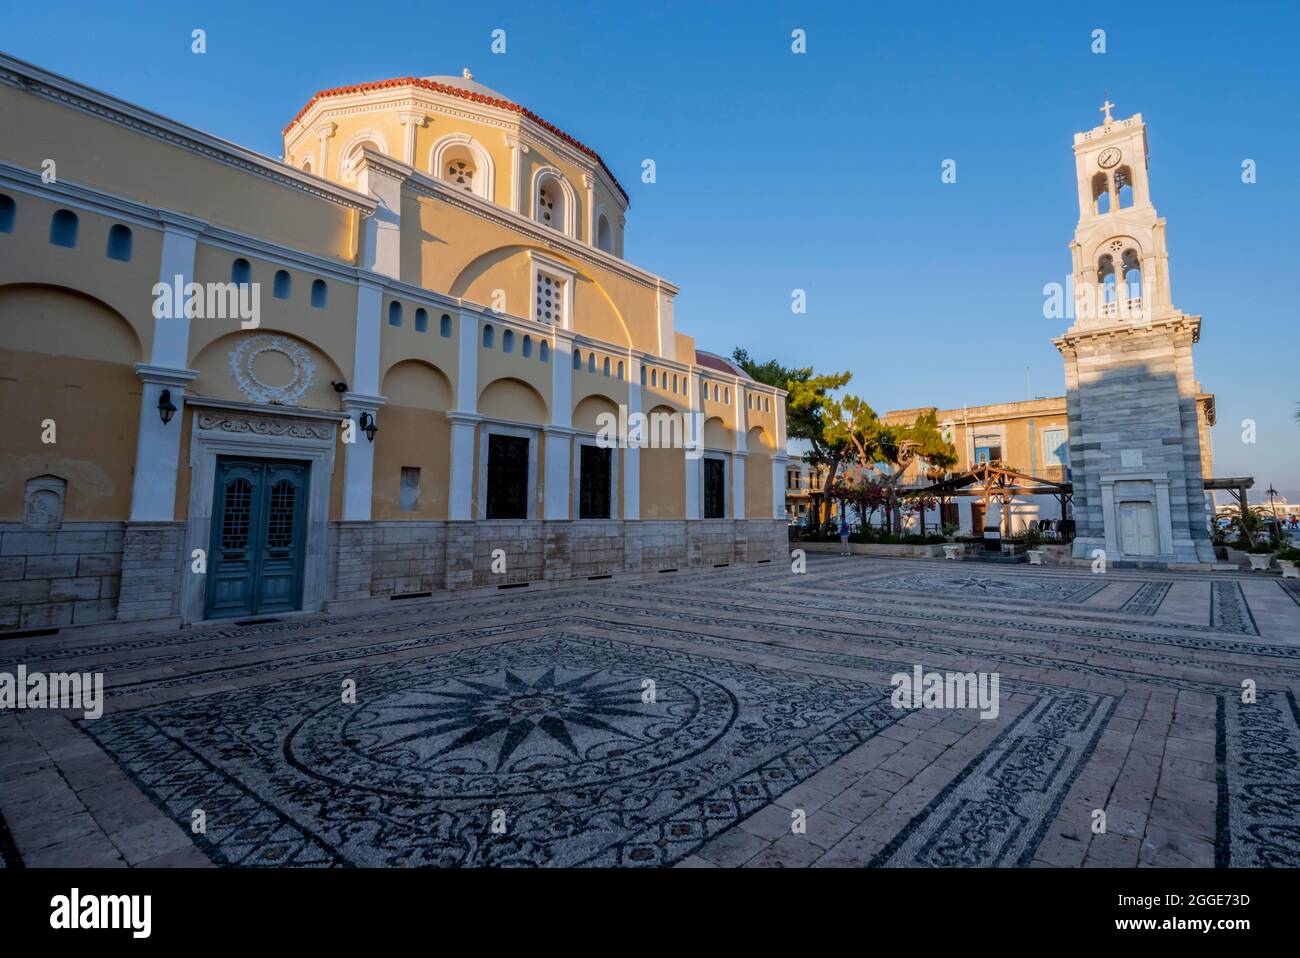 Église orthodoxe grecque, place ornée, Église Sainte-Métropolitaine, Kalymnos, Dodécanèse, Grèce Banque D'Images